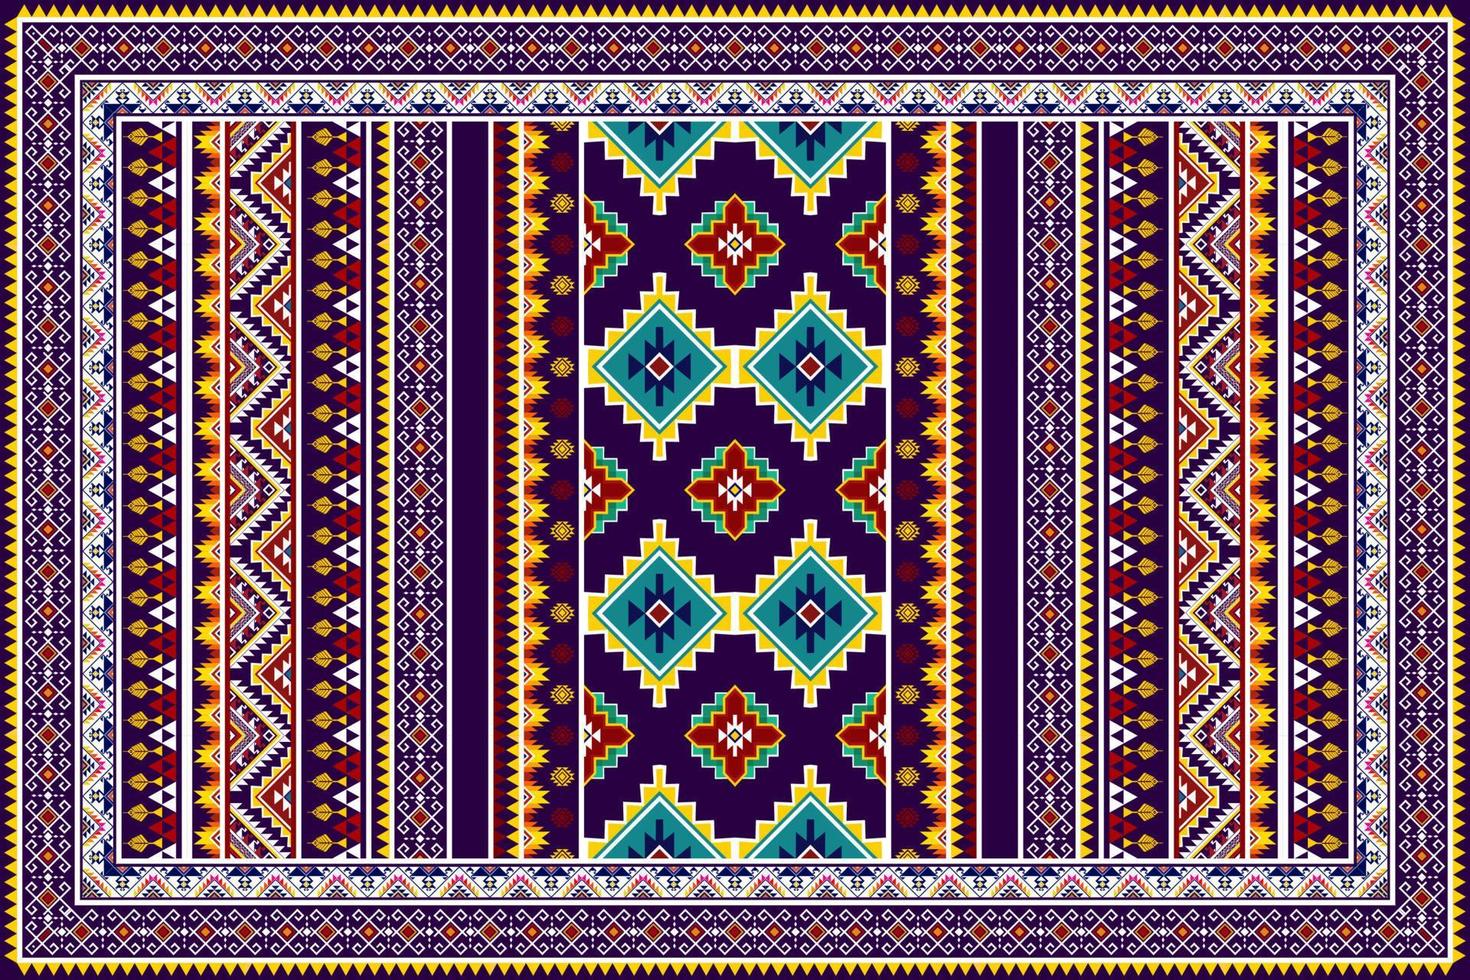 ikat abstract geometrisch etnisch patroonontwerp. Azteekse stof tapijt mandala ornament etnische chevron textiel decoratie behang. tribal boho inheemse etnische turkije traditionele borduurvector vector